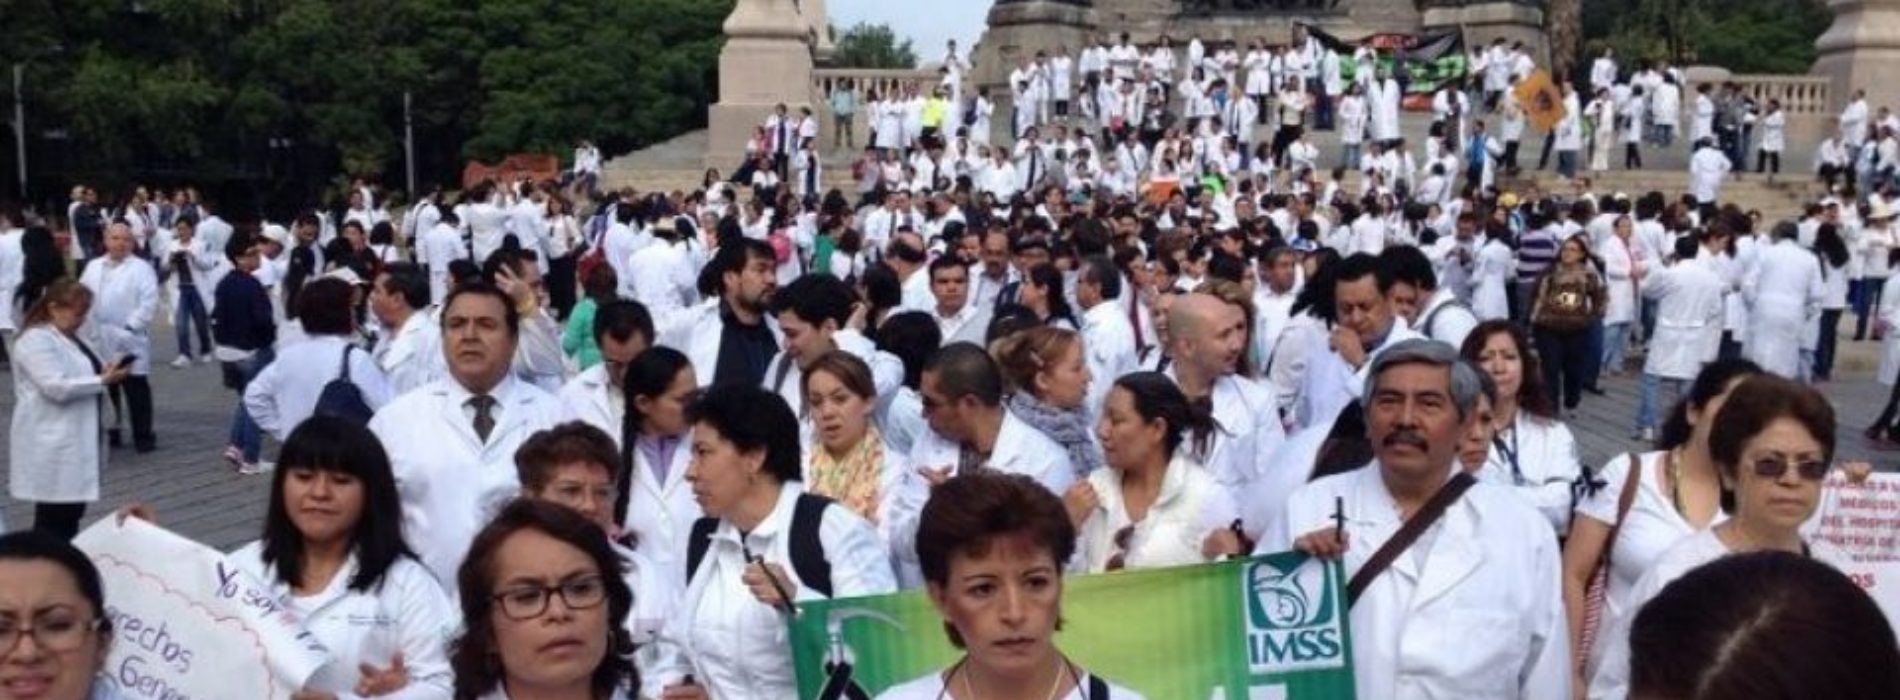 Fiscalía de Oaxaca acusa a médico de homicidio doloso por
muerte de menor; doctores convocan marchas en 70 ciudades